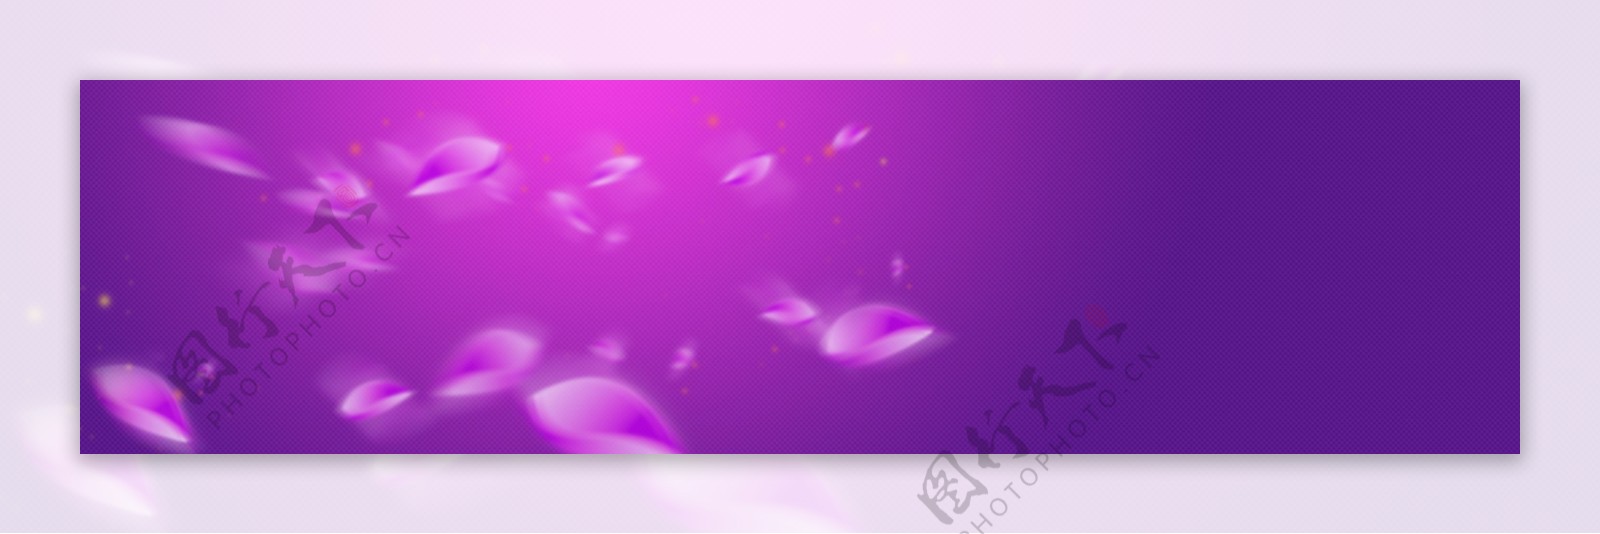 紫色梦幻banner